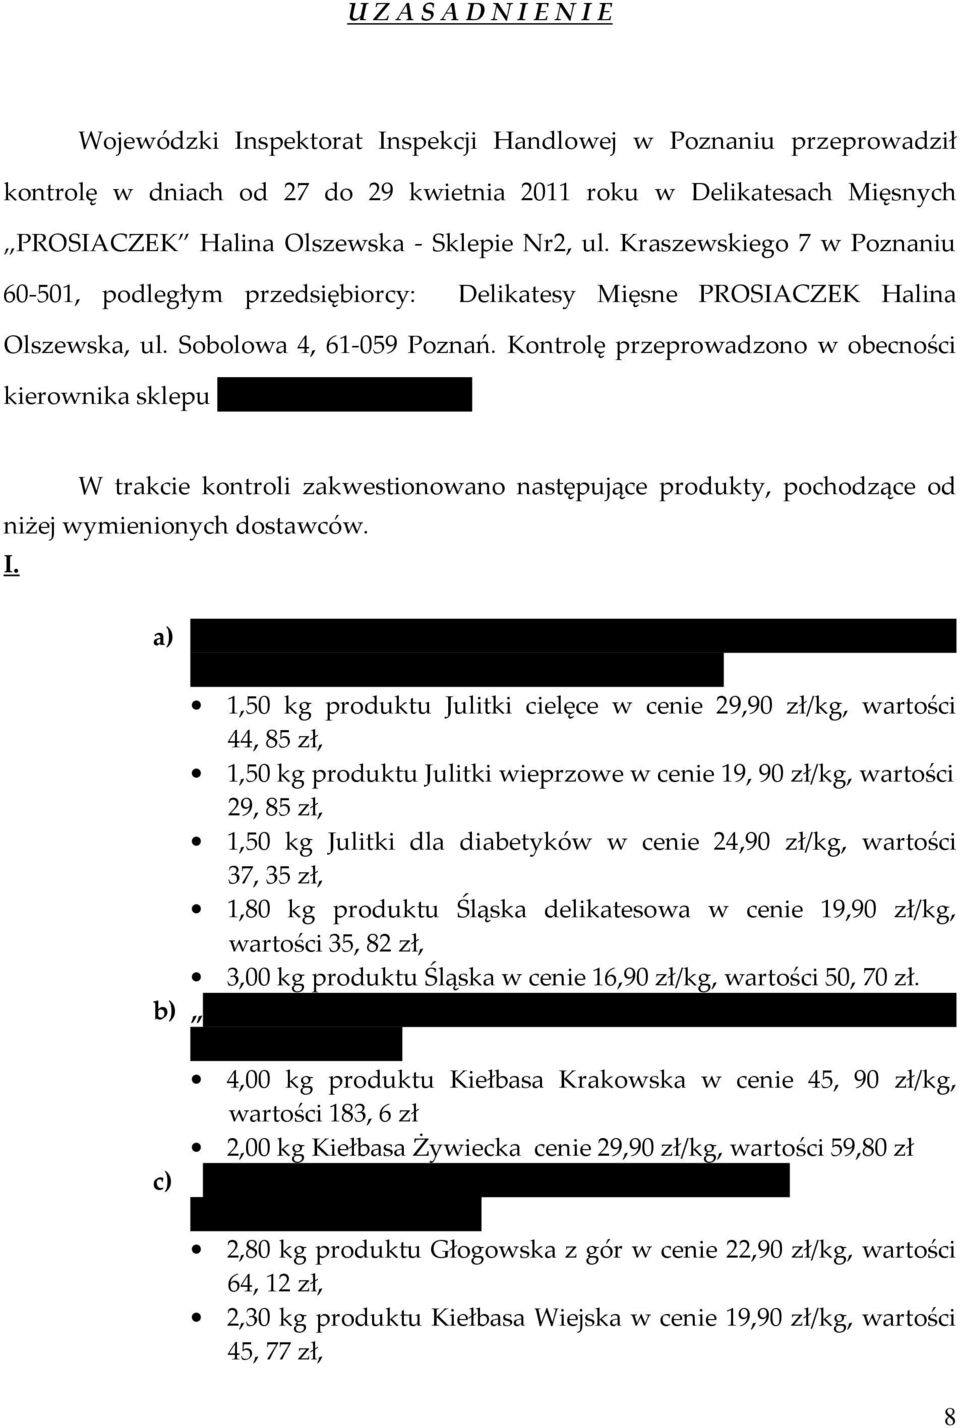 WIELKOPOLSKI WOJEWÓDZKI INSPEKTOR INSPEKCJI HANDLOWEJ Al. Marcinkowskiego  3, Poznań - PDF Darmowe pobieranie